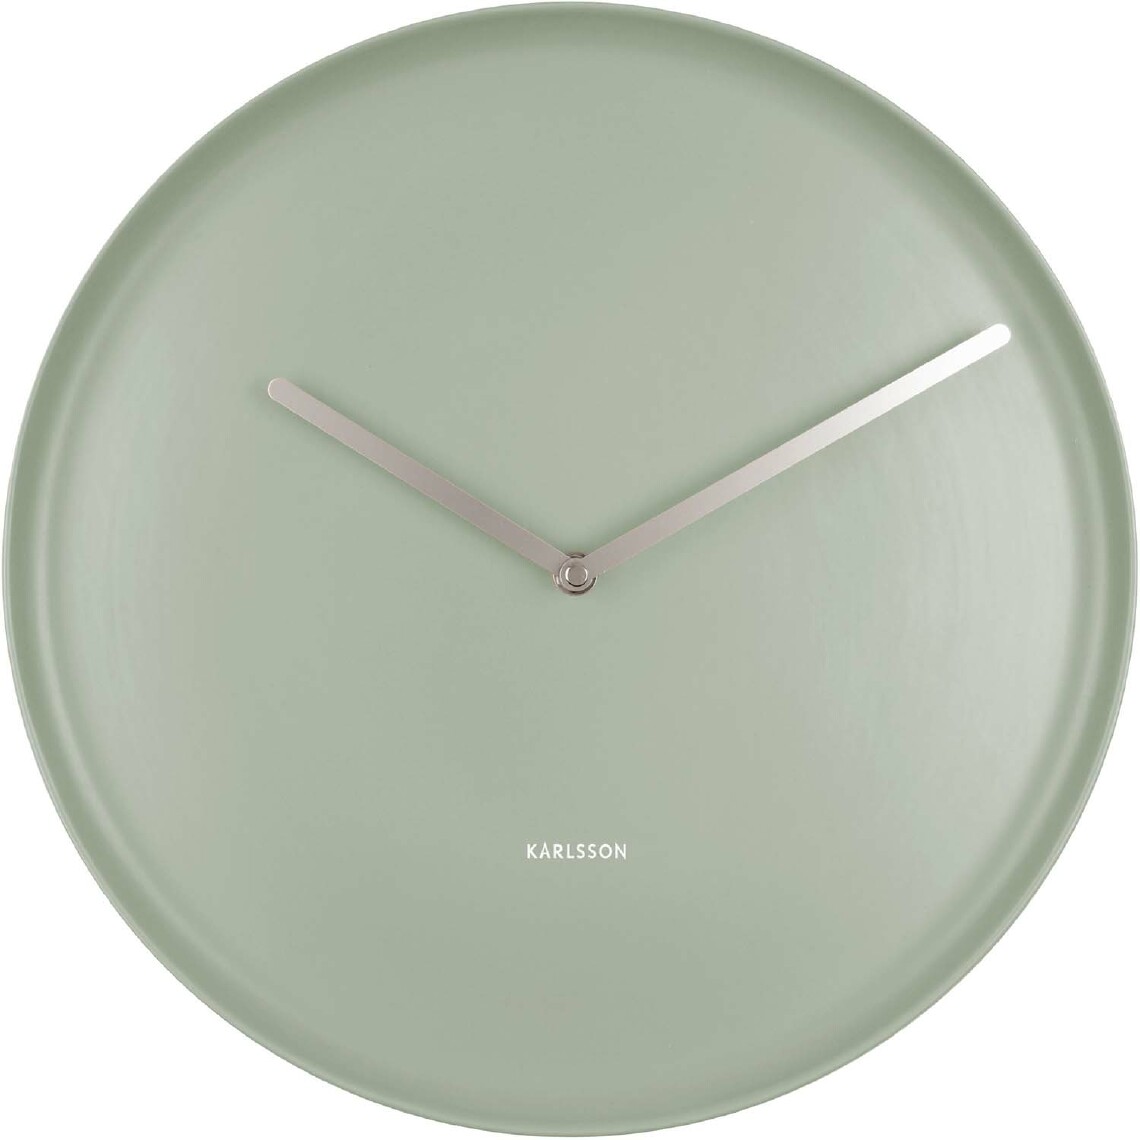 Karlsson - Horloge en porcelaine Plate 35 cm Vert jade - Horloges, pendules